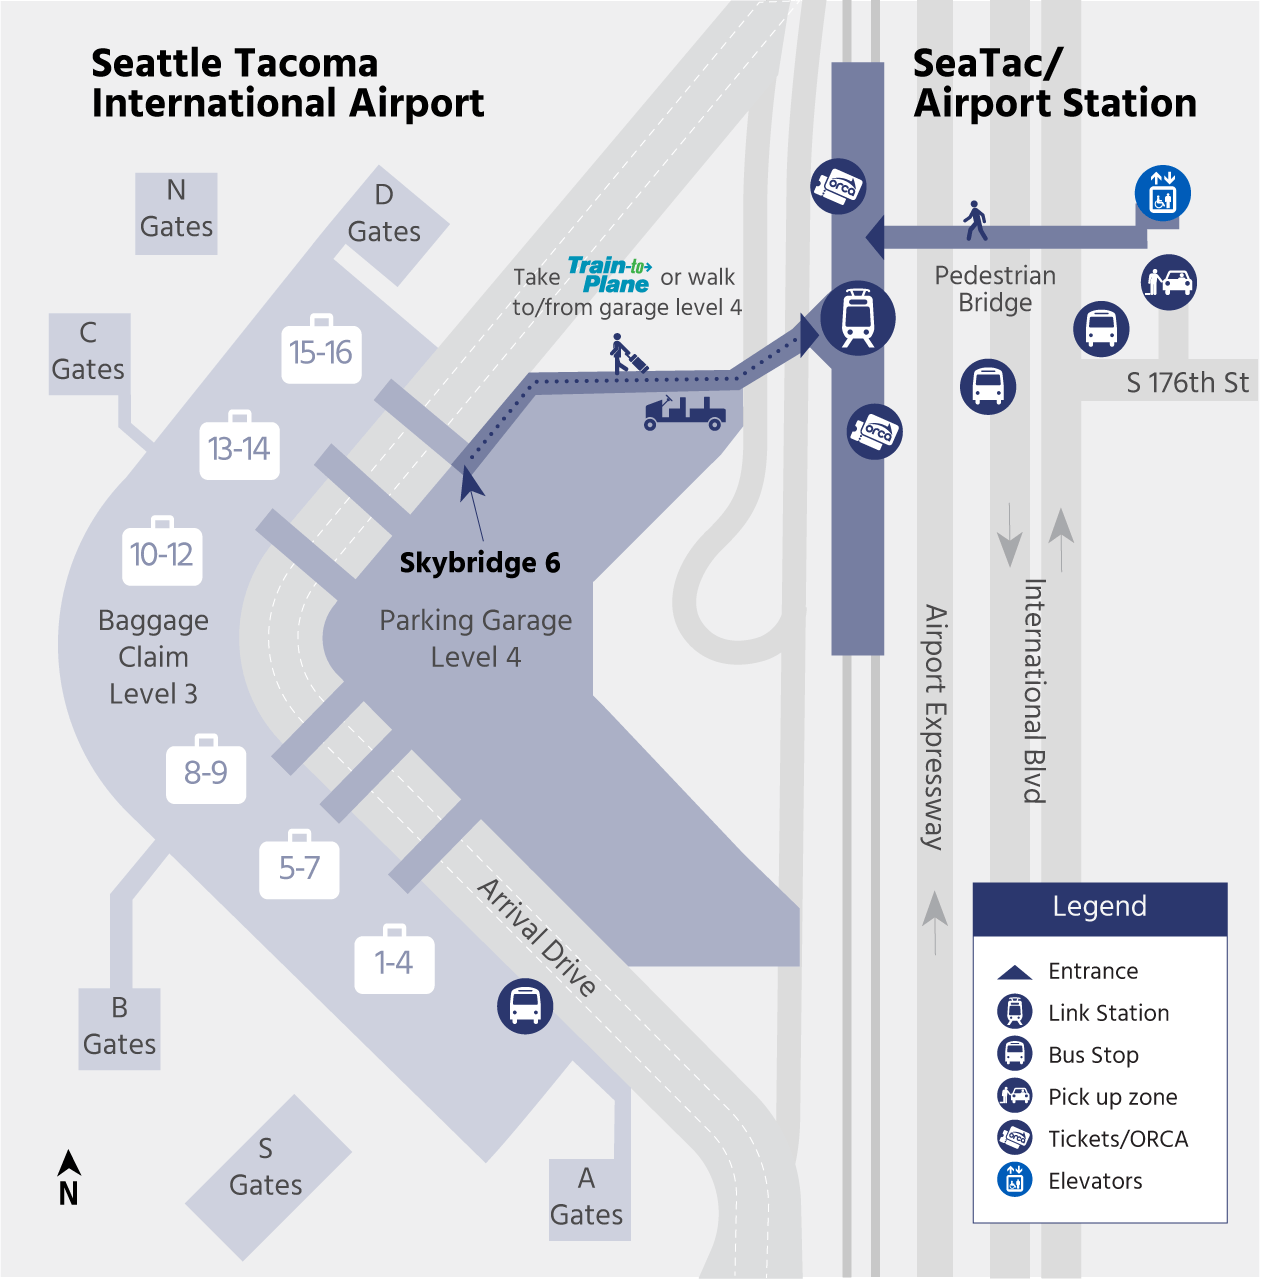 Seatac Airport Station Dec 2021 